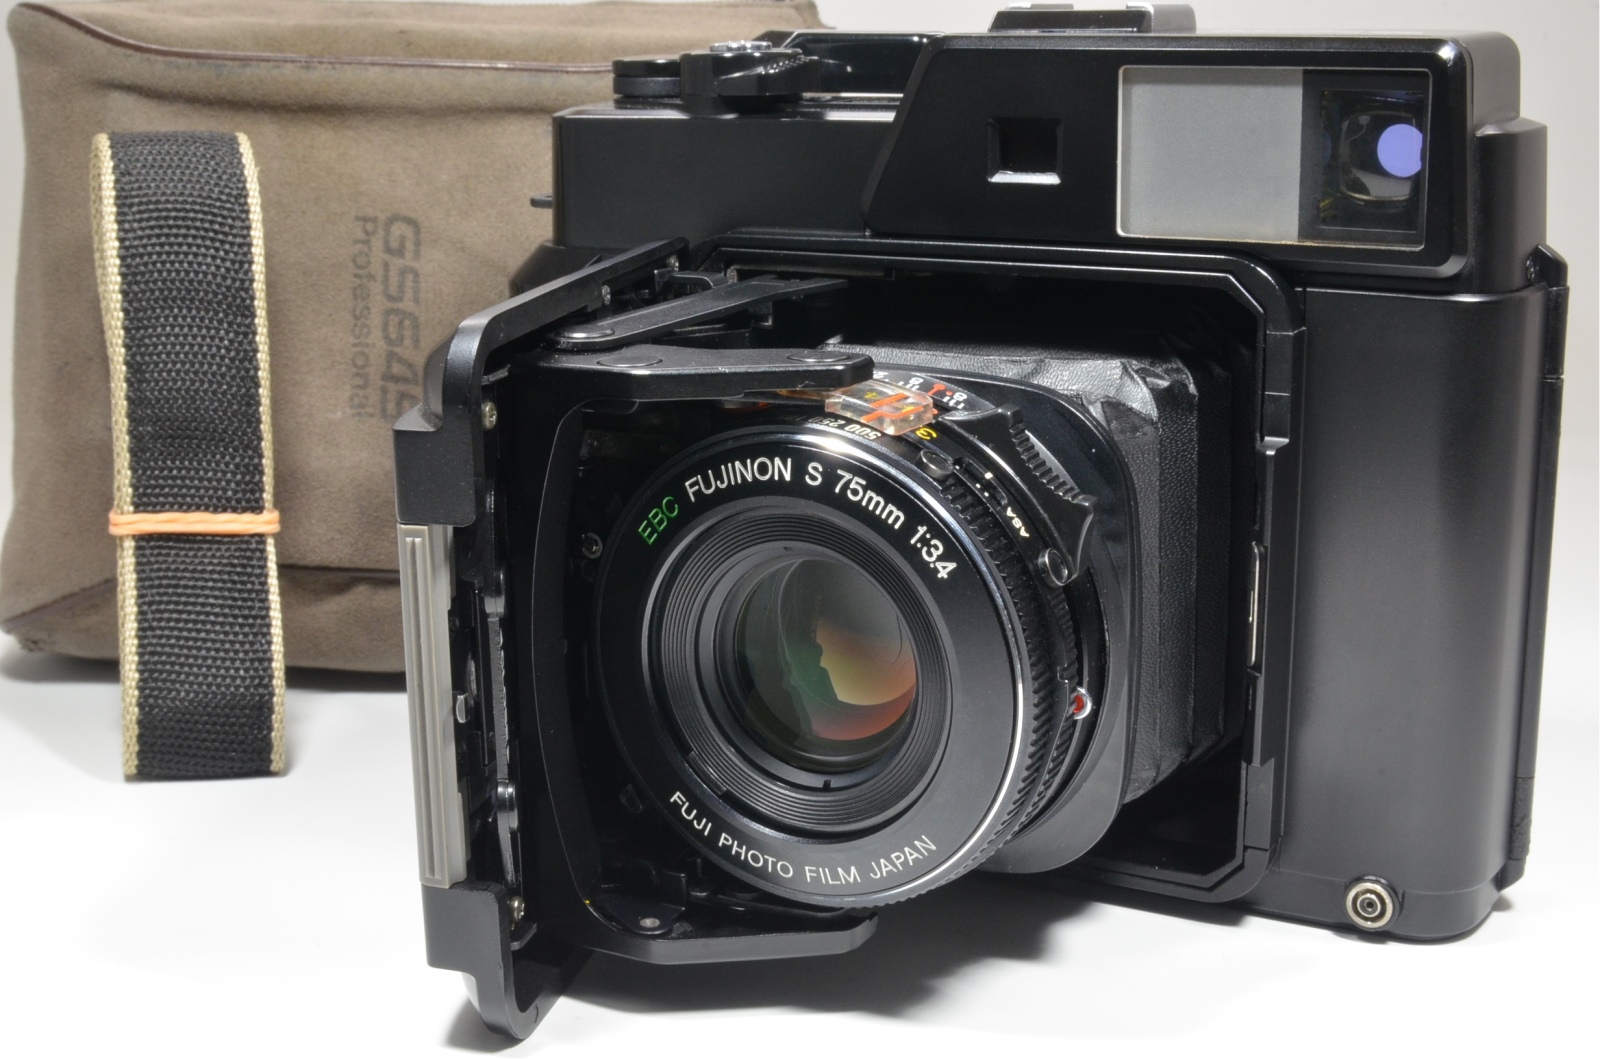 Fujifilm Fujica GS645 Pro Fujinon 75mm f3.4 Medium Format Film